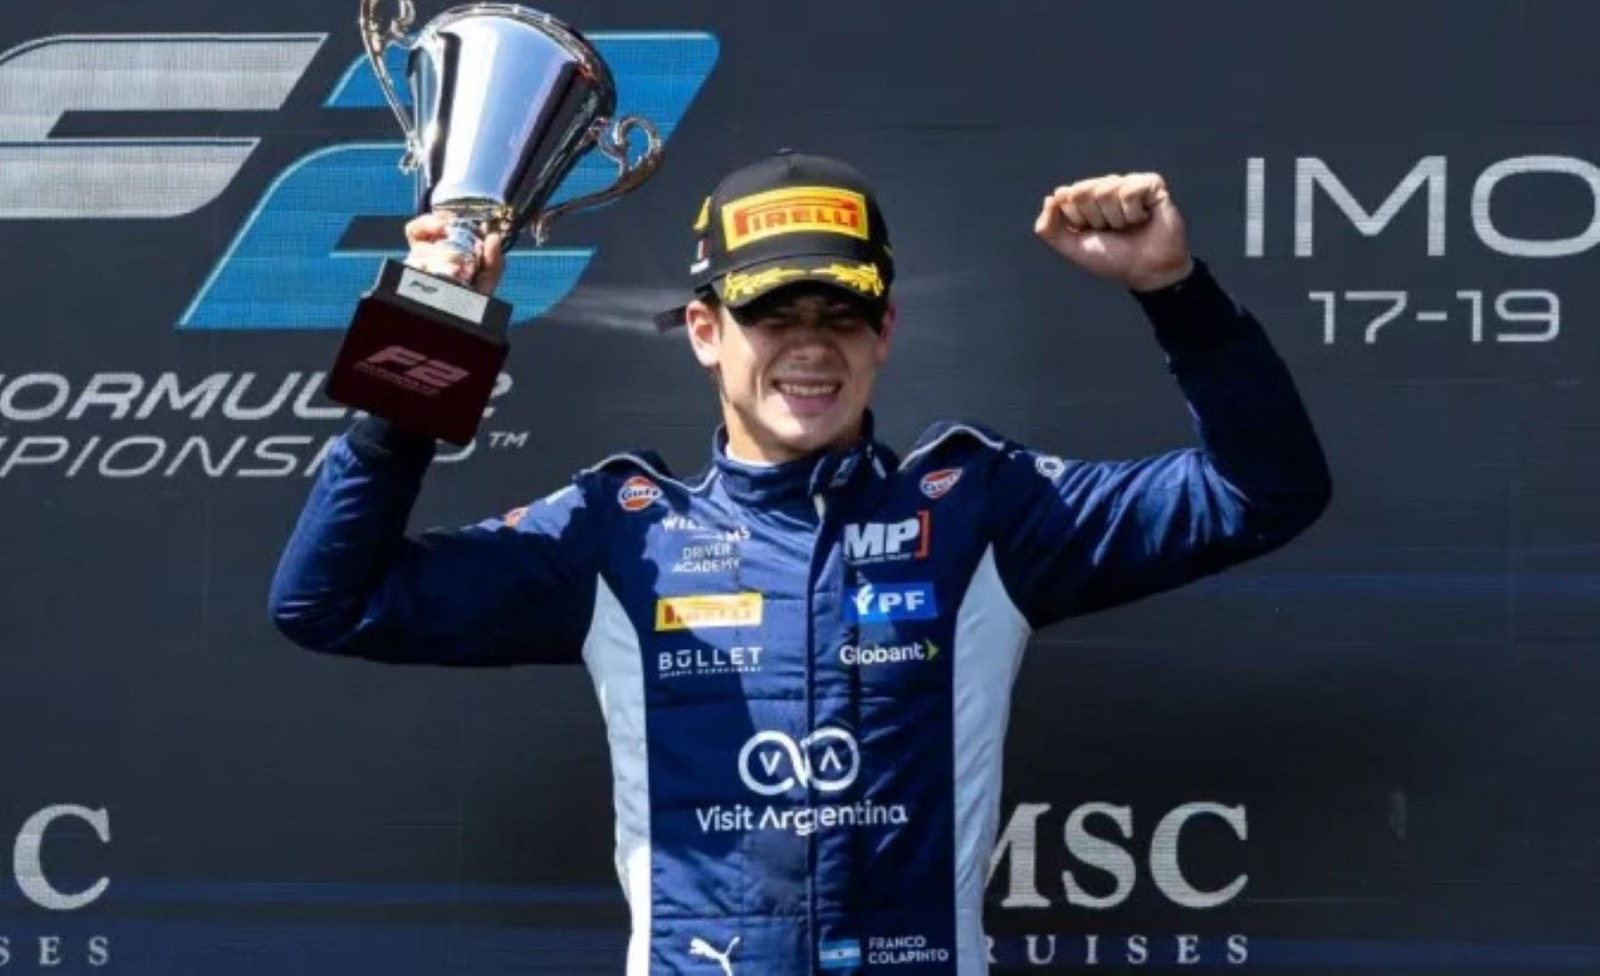 El piloto argentino formará parte del Gran Premio de Silverstone en Inglaterra.